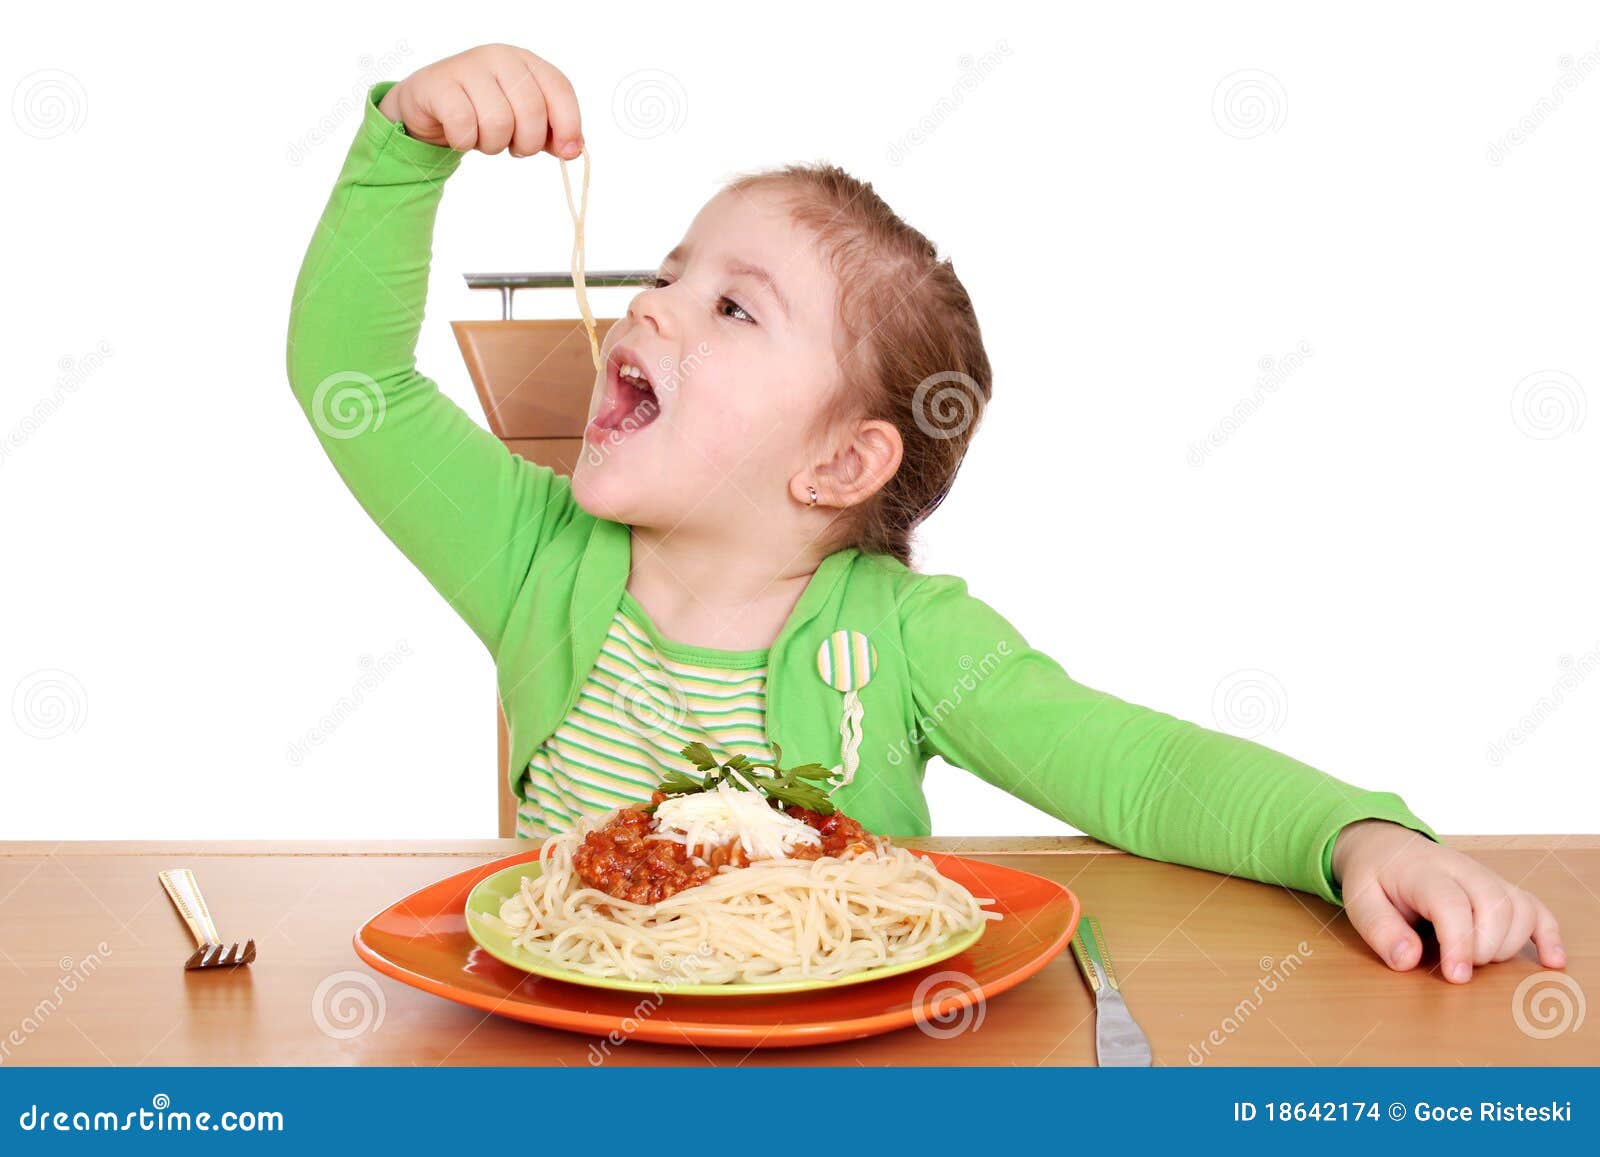 Голодный возраст. Кушать руками. Ребенок тянется за едой. Мальчик ест руками.